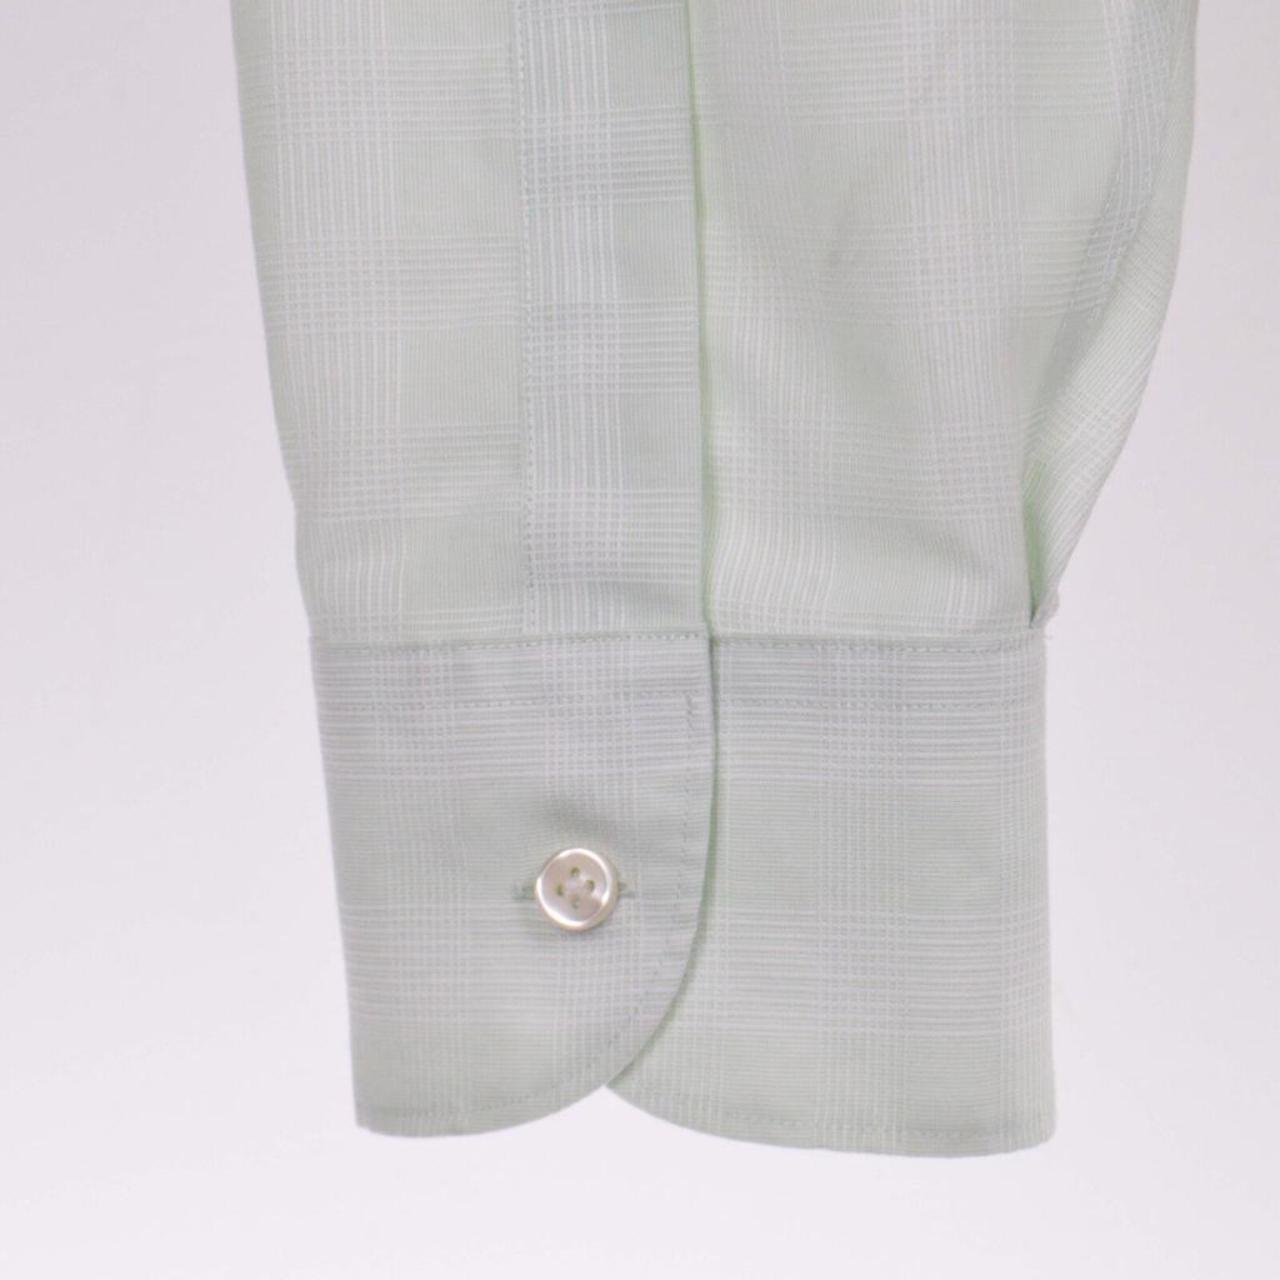 Charles Tyrwhitt Men's Green and White Shirt (5)